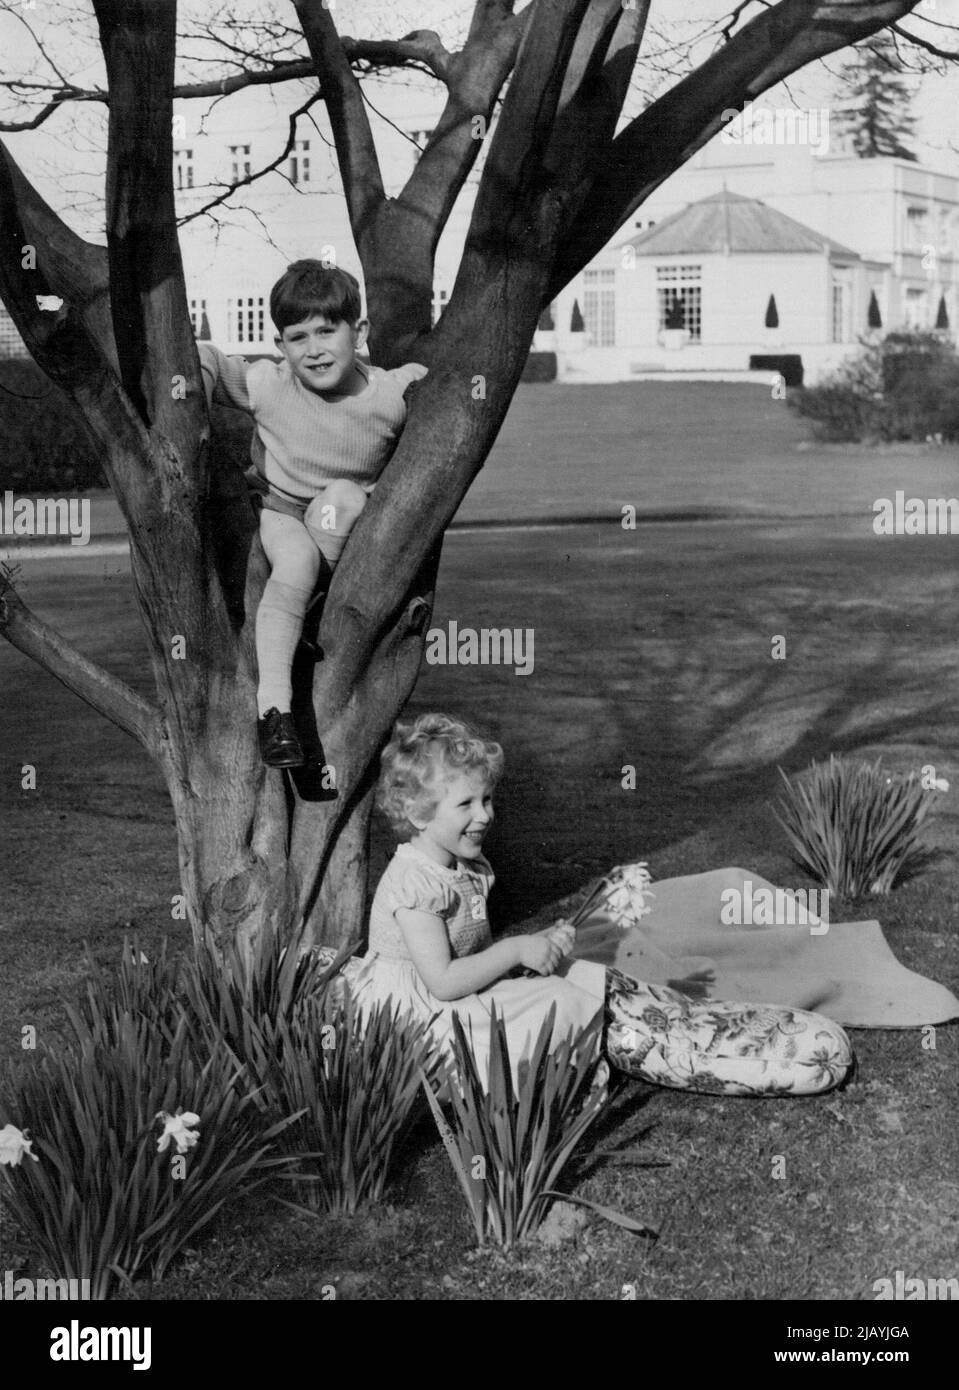 Auf dem Gelände in Windsor gibt es jede Menge Unterhaltung, einen Baum für Prinz Charles und Narzissen für Prinzessin Anne. 18. Oktober 1954. (Foto von Lisa). Stockfoto